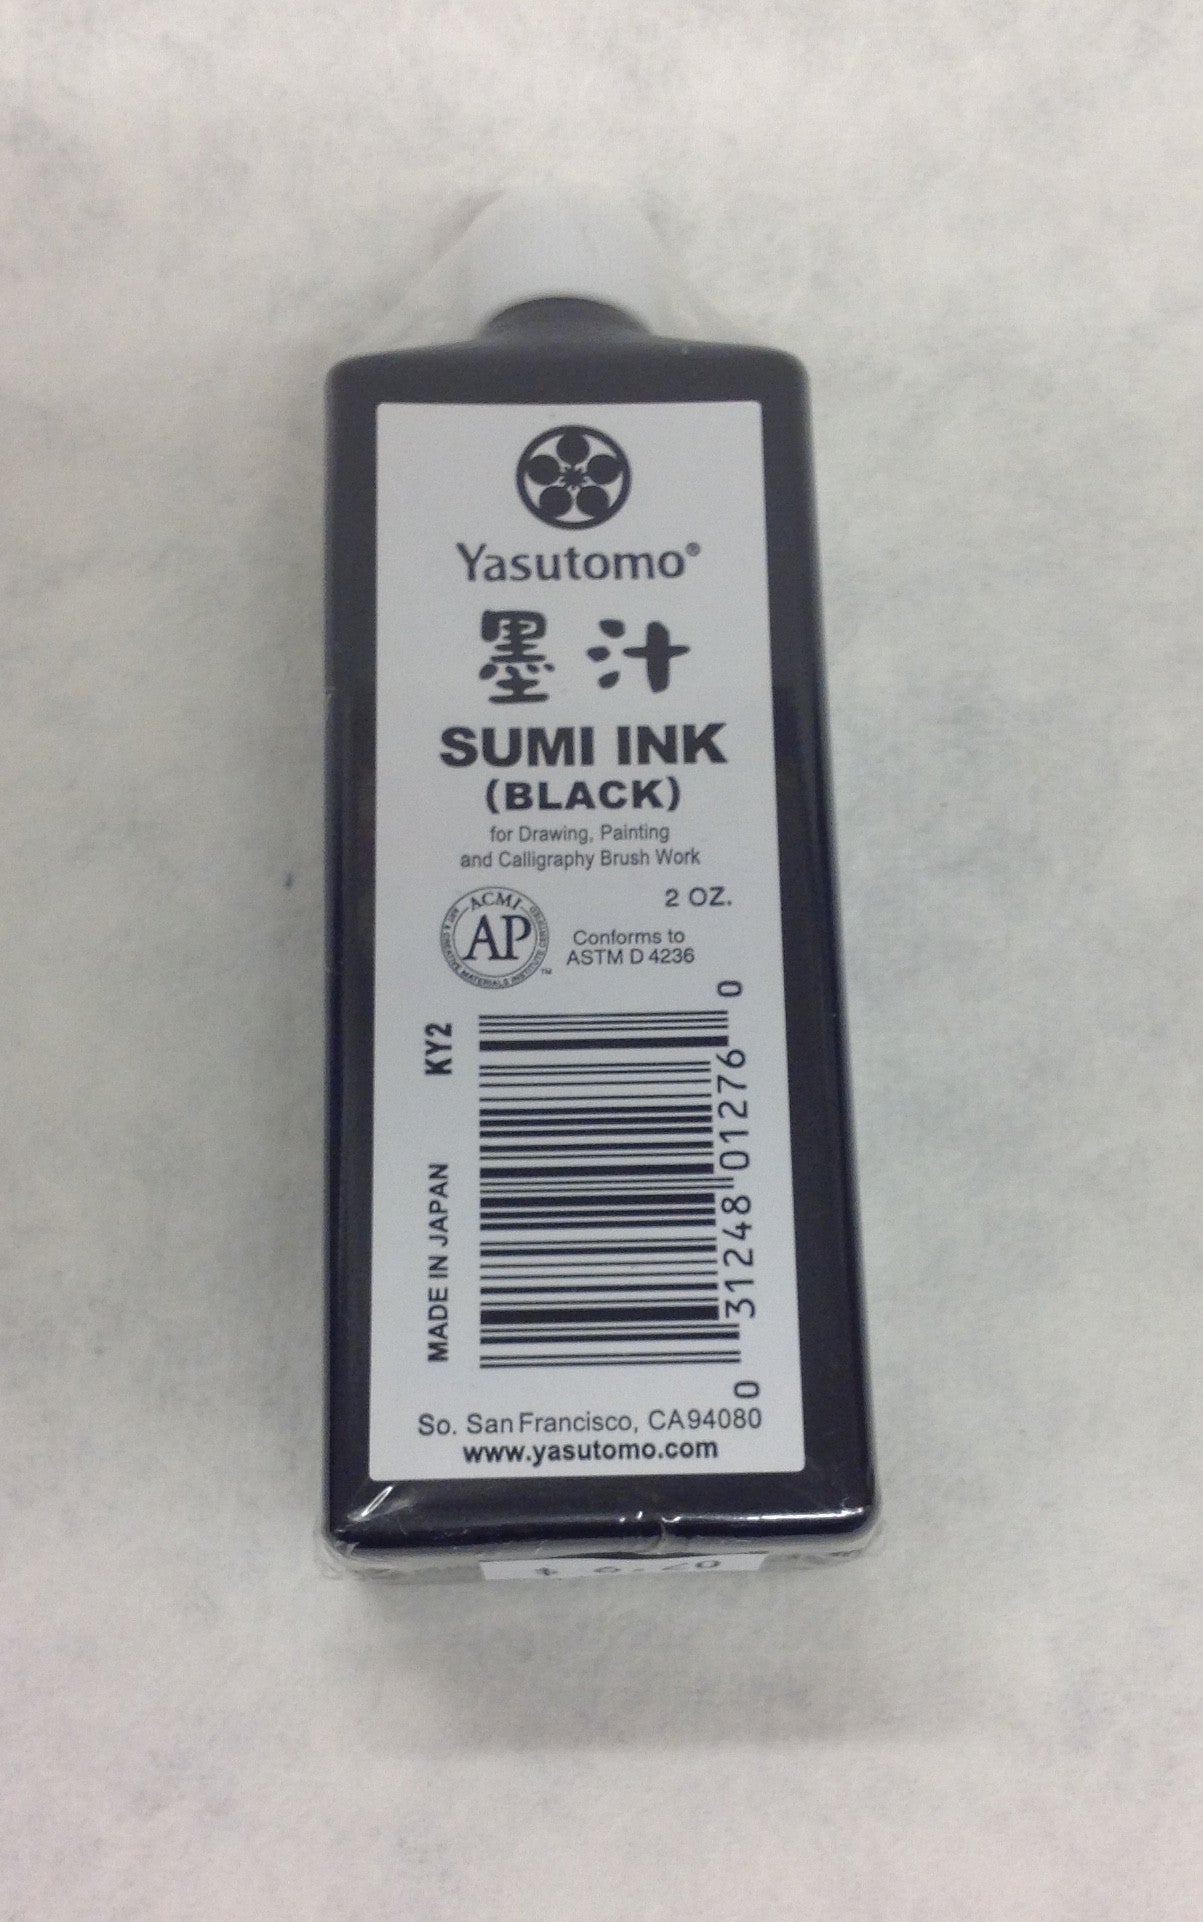 Yasutomo Sumi Ink